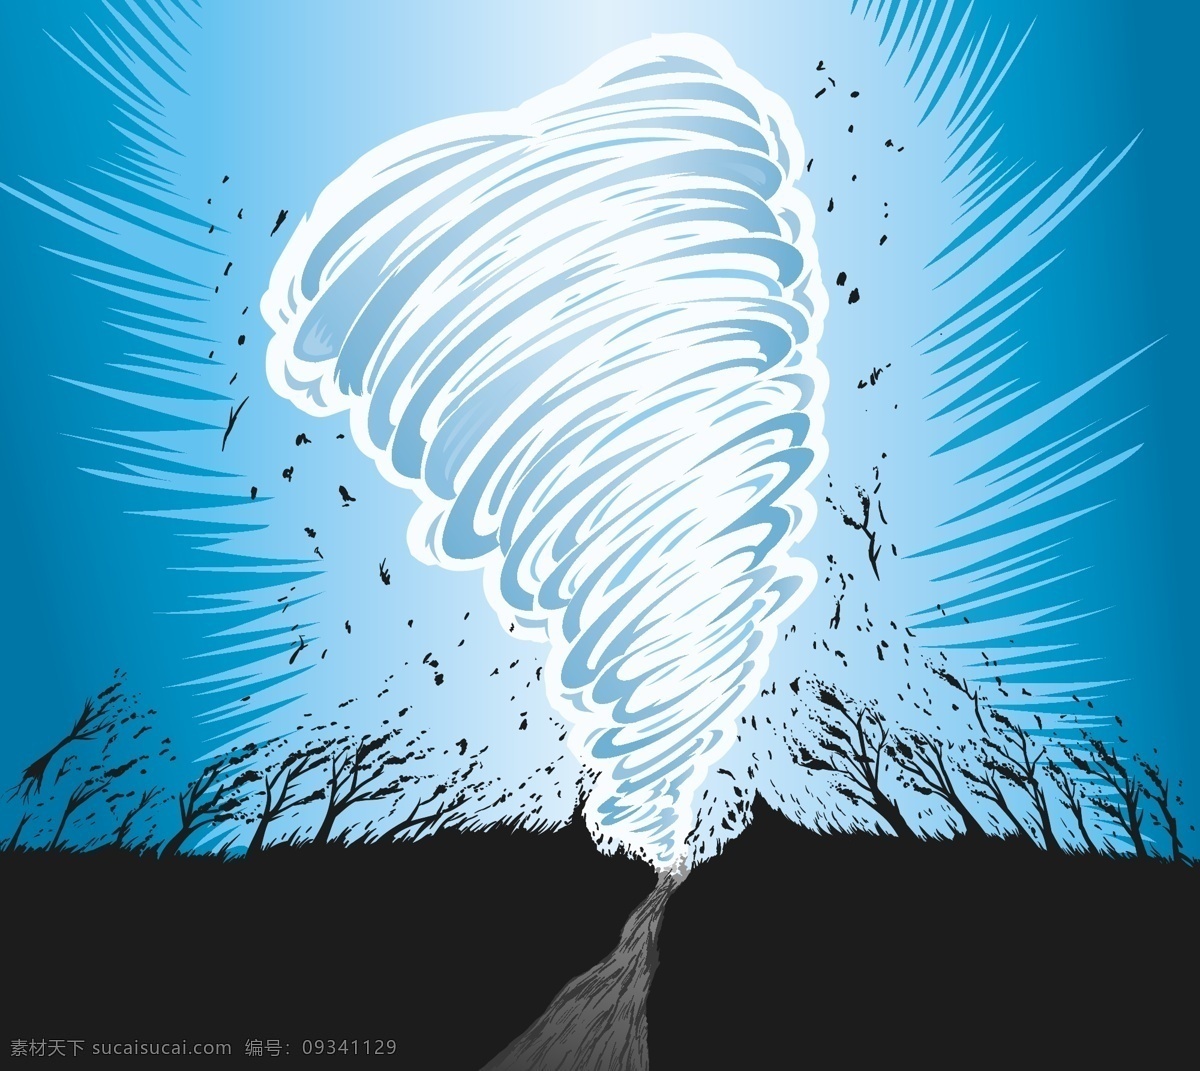 矢量龙卷风 卡通龙卷风 手绘龙卷风 龙卷风插画 龙卷风背景 飓风 图标标签标志 自然景观